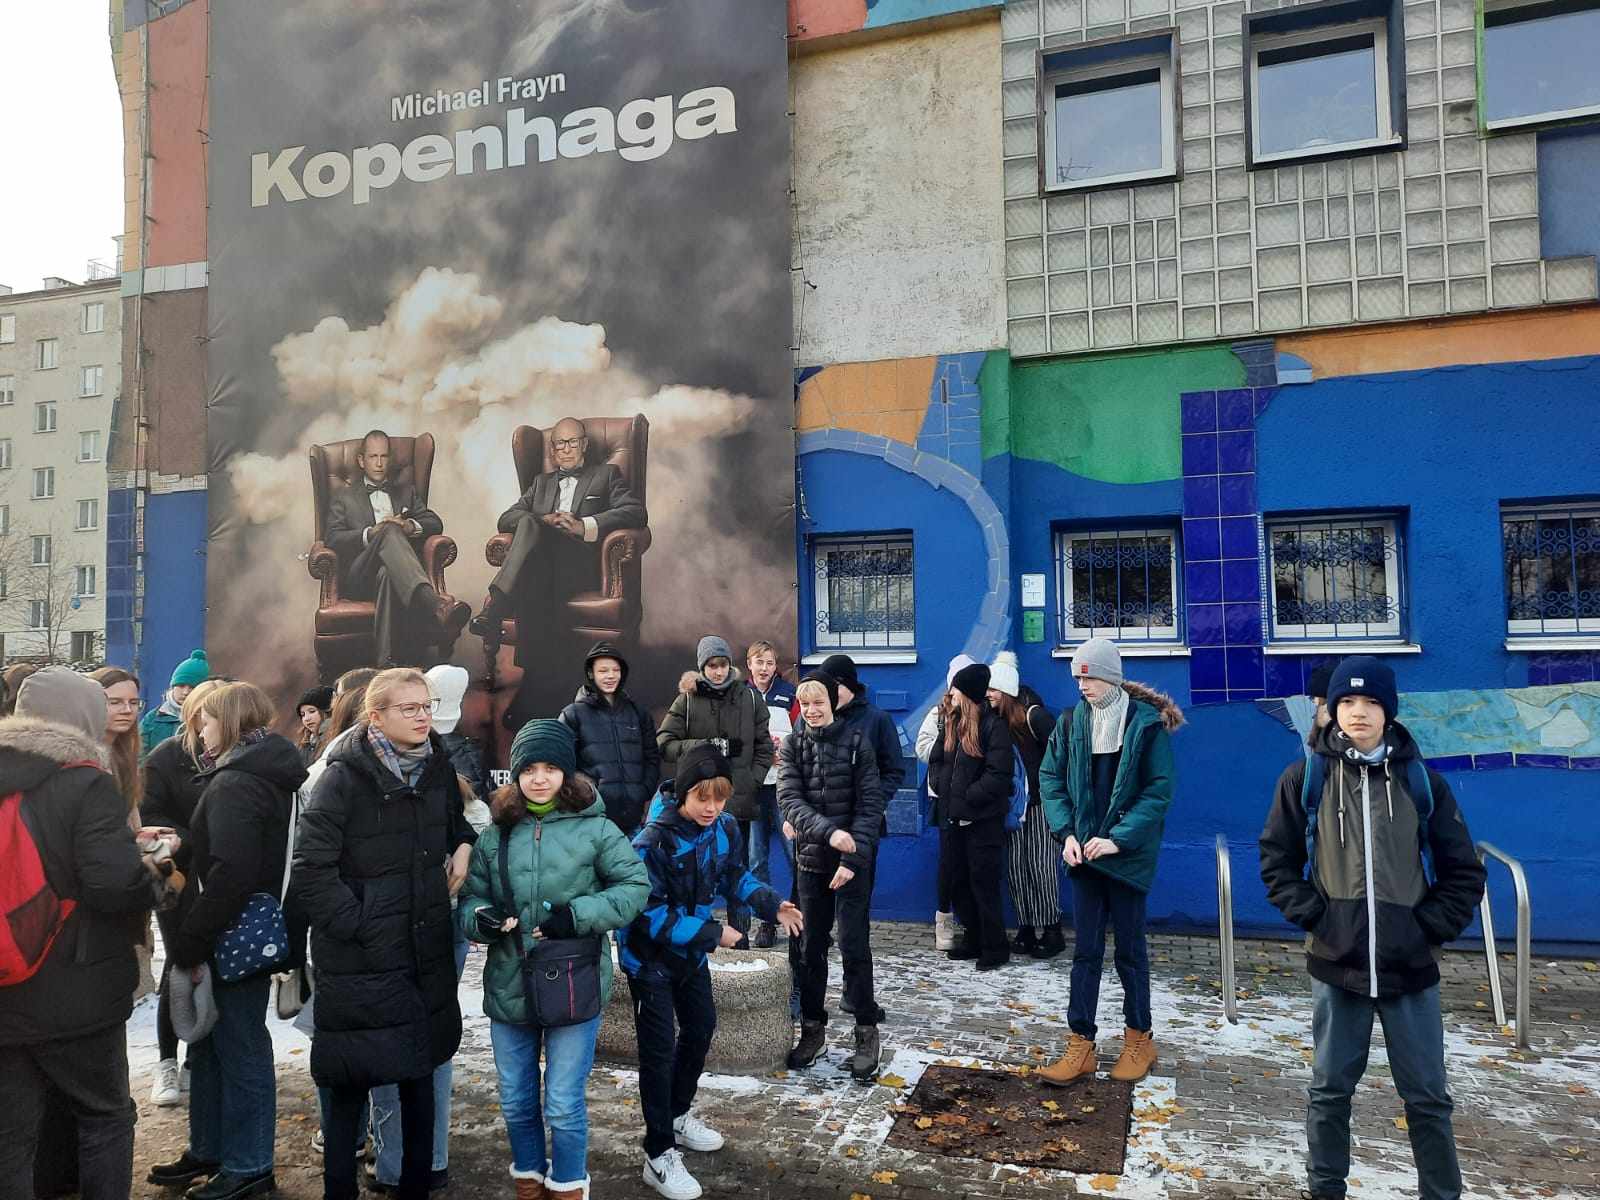 Grupa młodzieży przed budynkiem. Ściana budynku pokryta graffiti. Na ścianie wisi plakat promujący spektakl, napis: Michael Frayn "Kopenhaga".